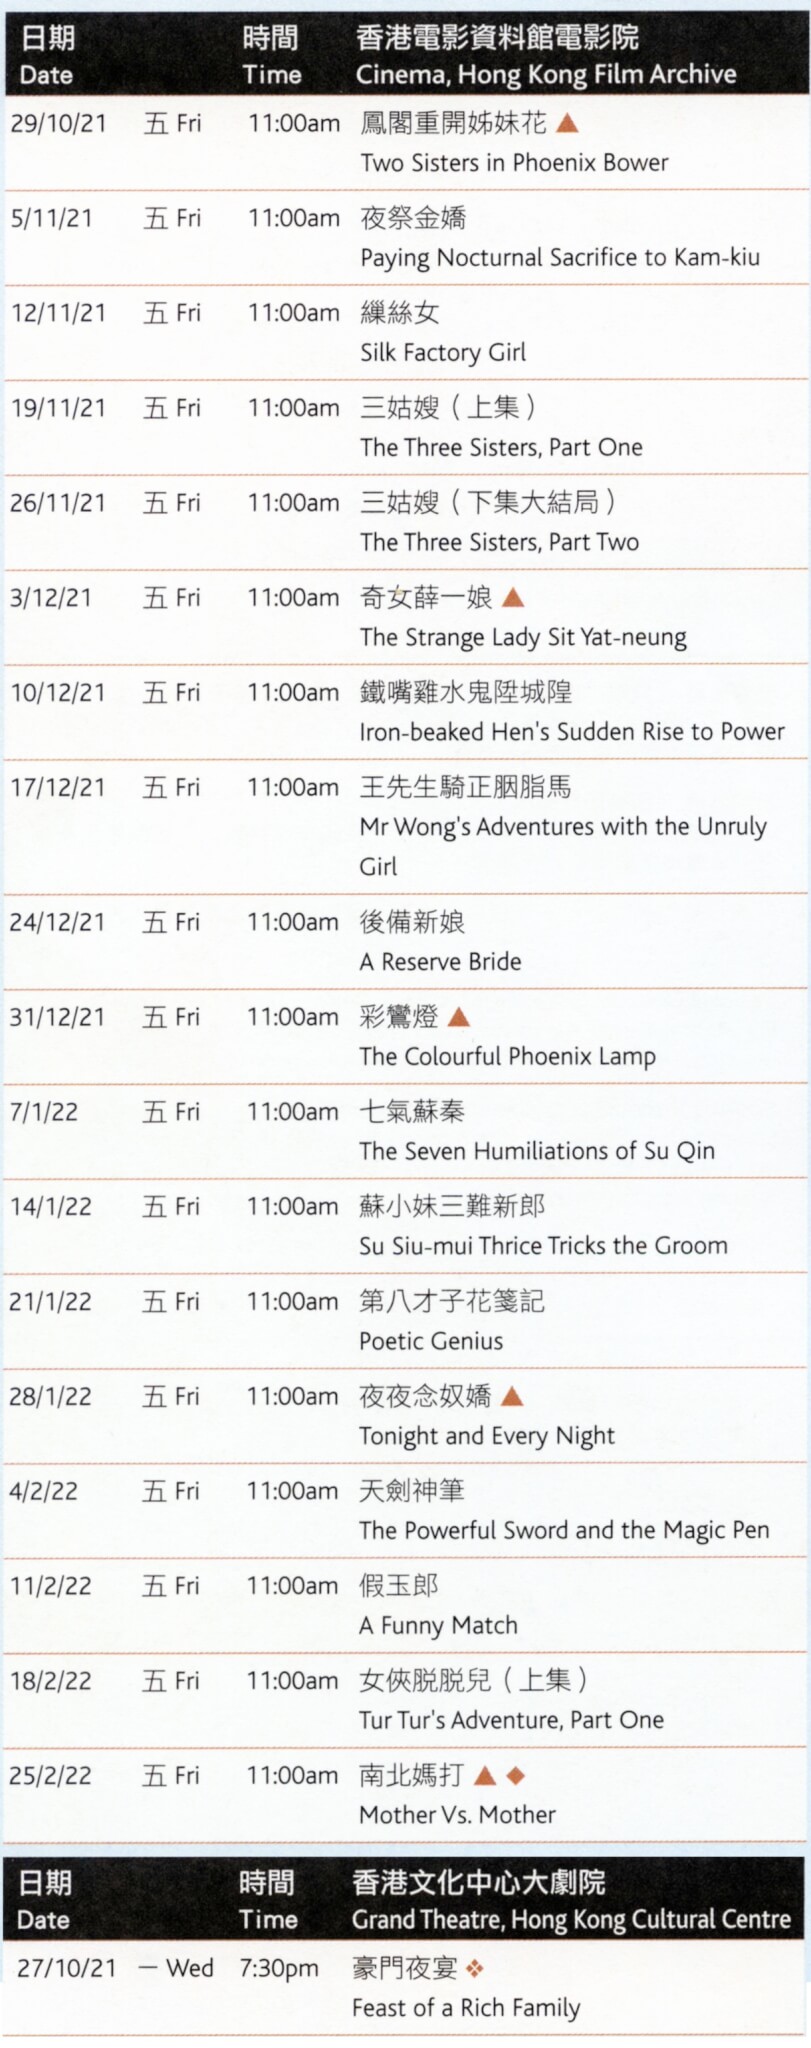 鄧碧雲的18部作品分別於電影資料館電影院及香港文化中心大劇院放映，以上是放映日期與時間，票價劃一為30元。